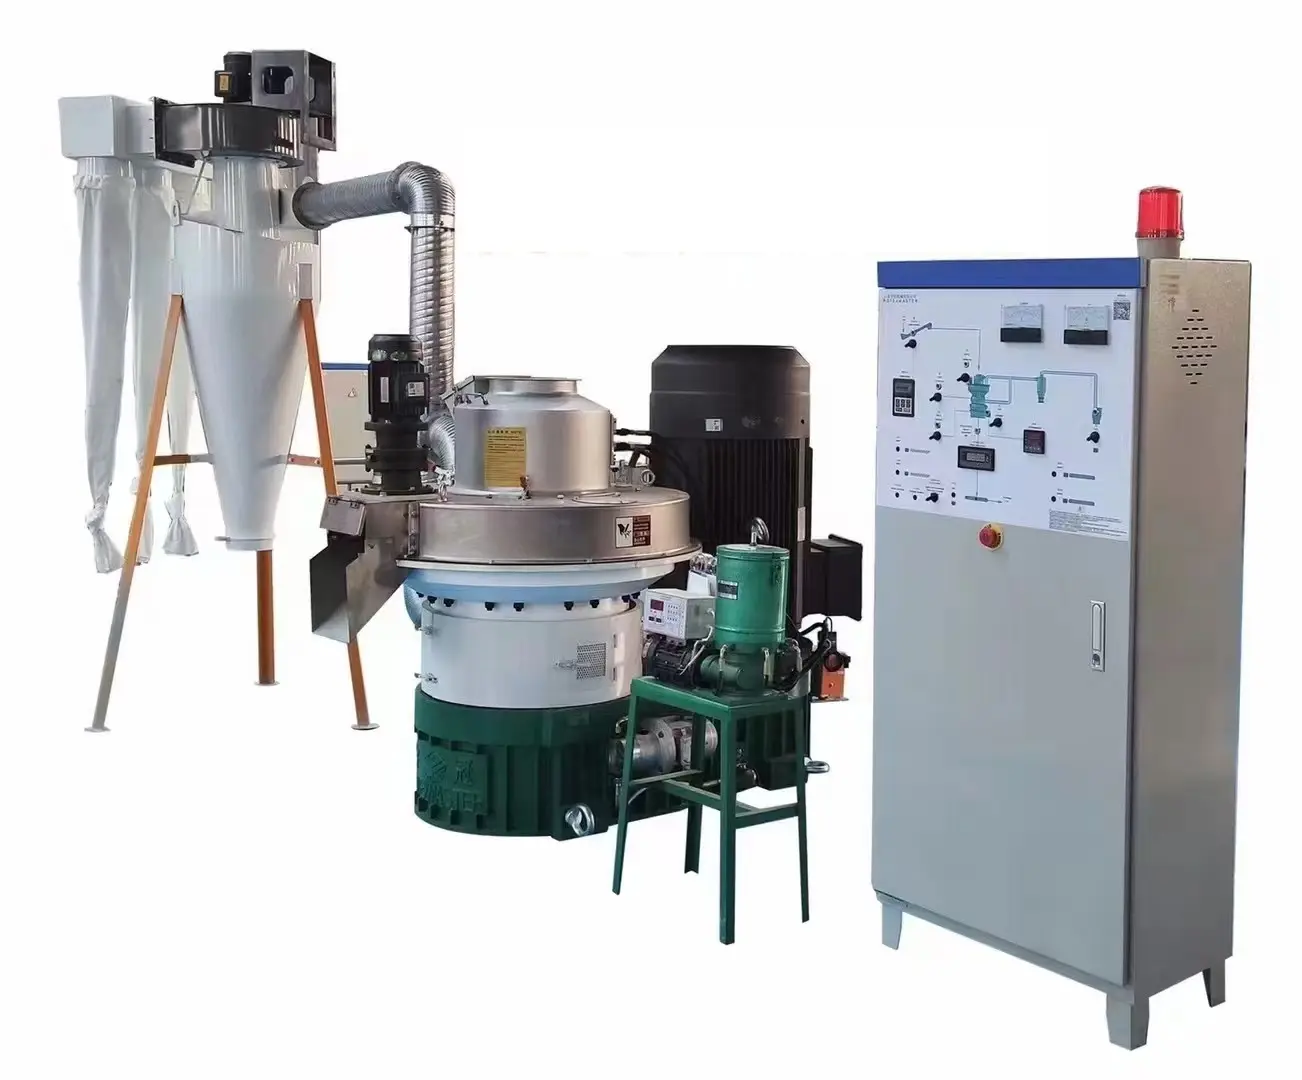 1-30 t/h Complete Wood Pellet Production Line Automatic Biomass Fuel Pellet Plant